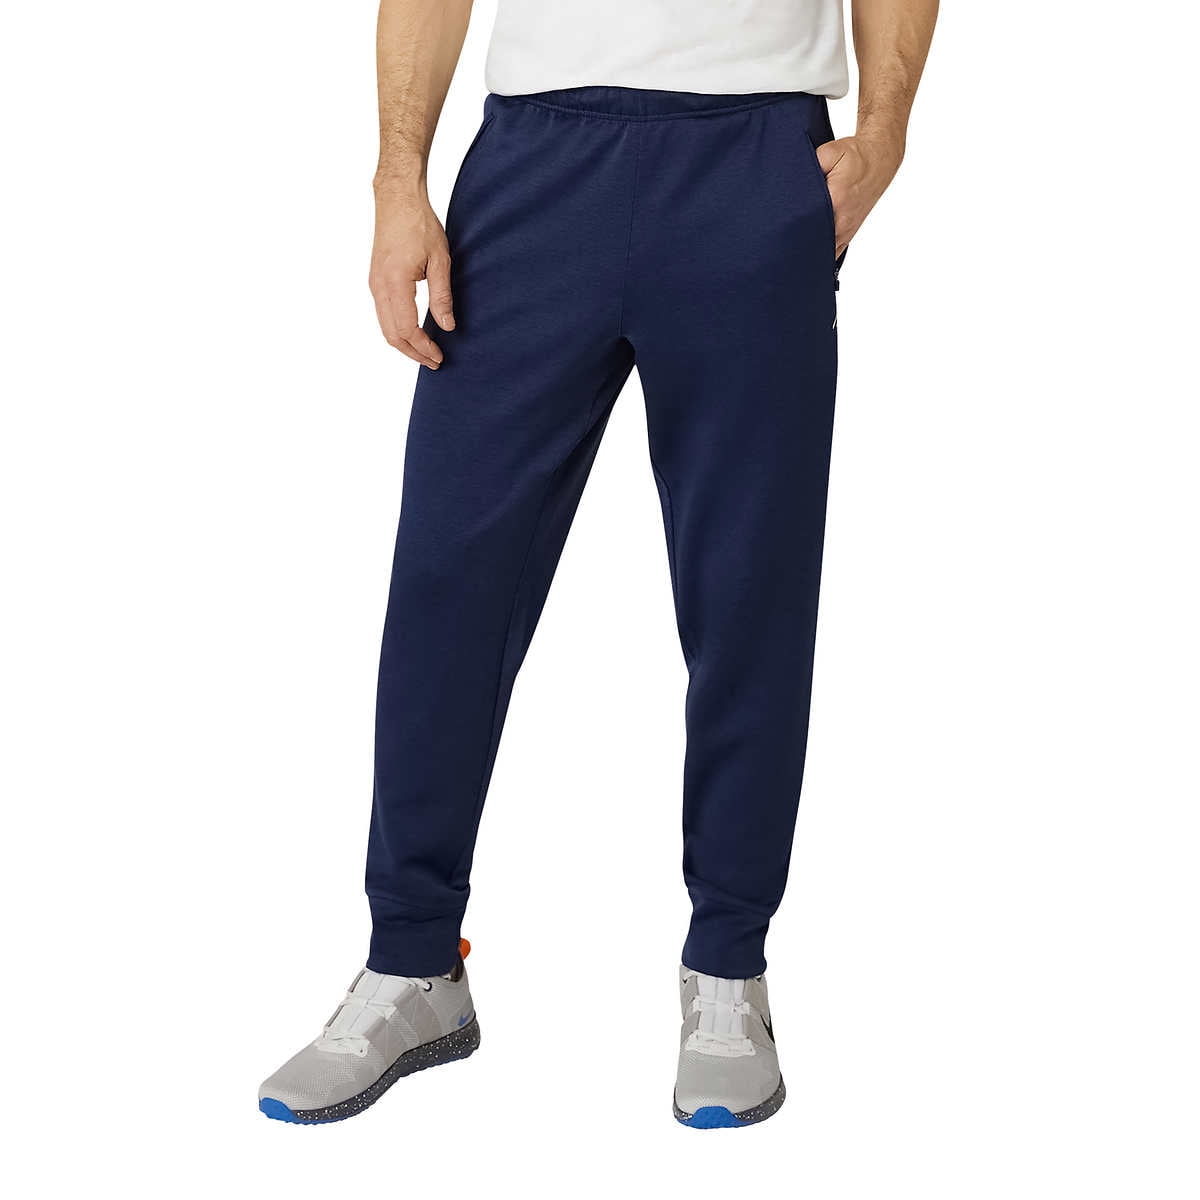 Eddie Bauer Men’s Fleece Sweatpants Performance Joggers Pants, Blue ...